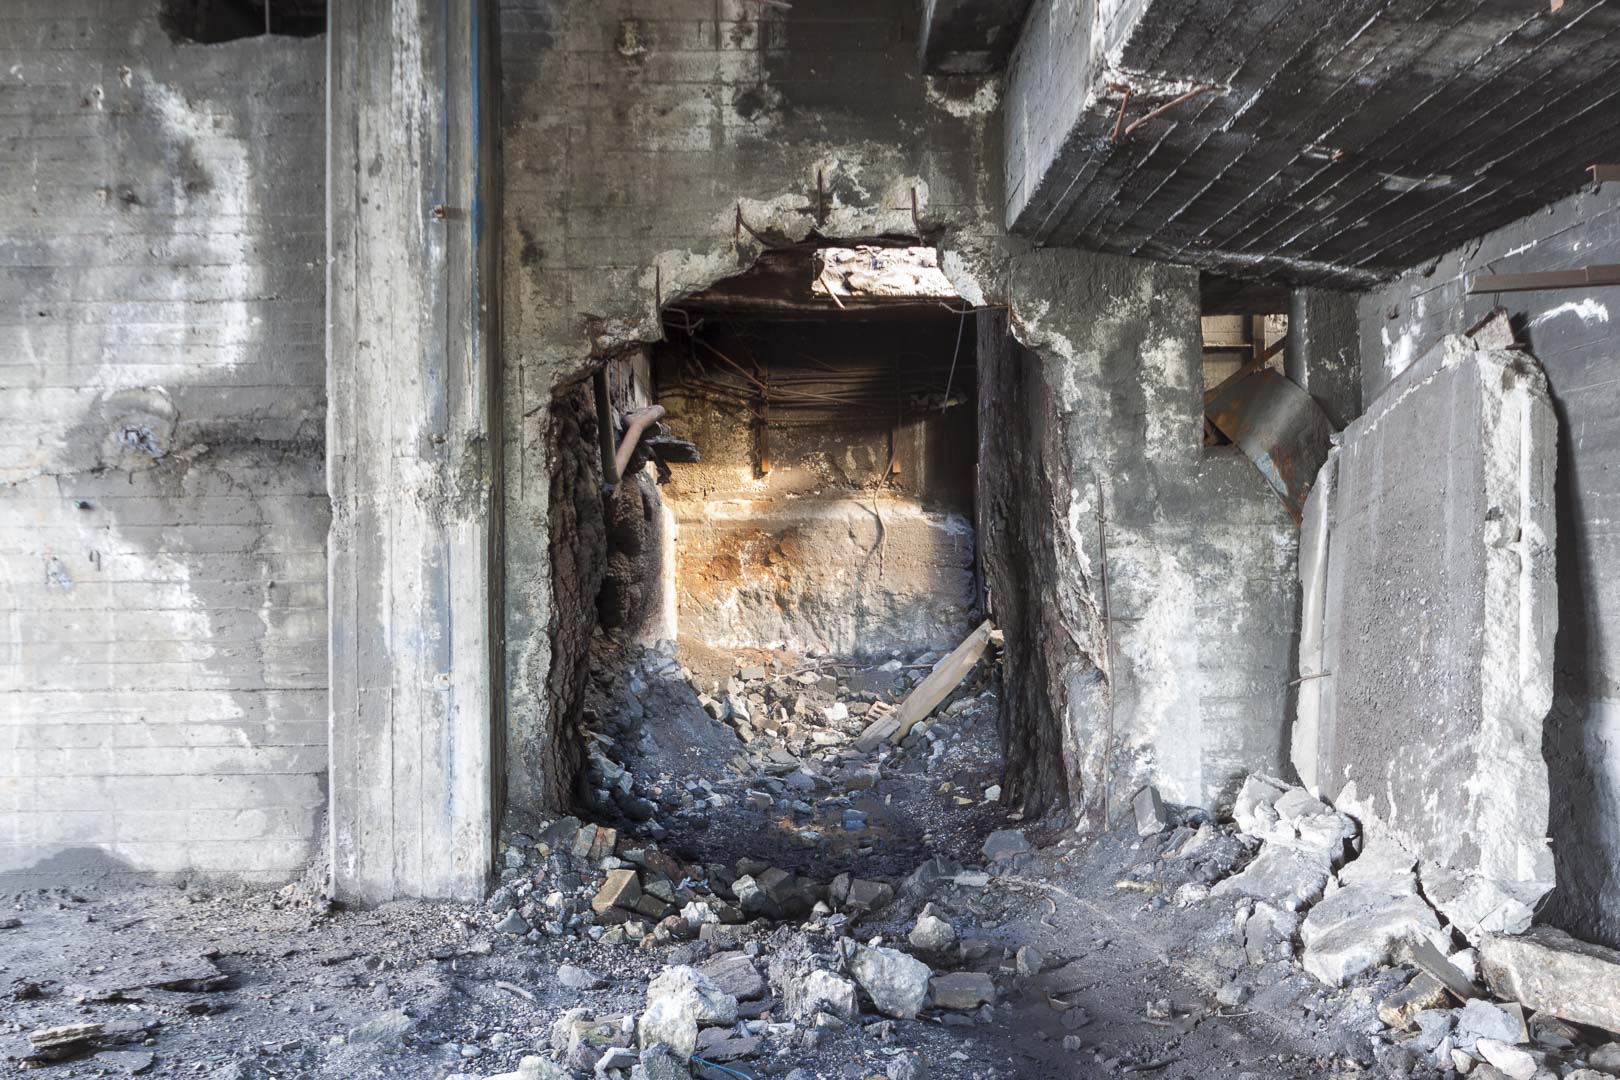 Abandoned “Teksid” Steel Mill – Carmagnola, Italy